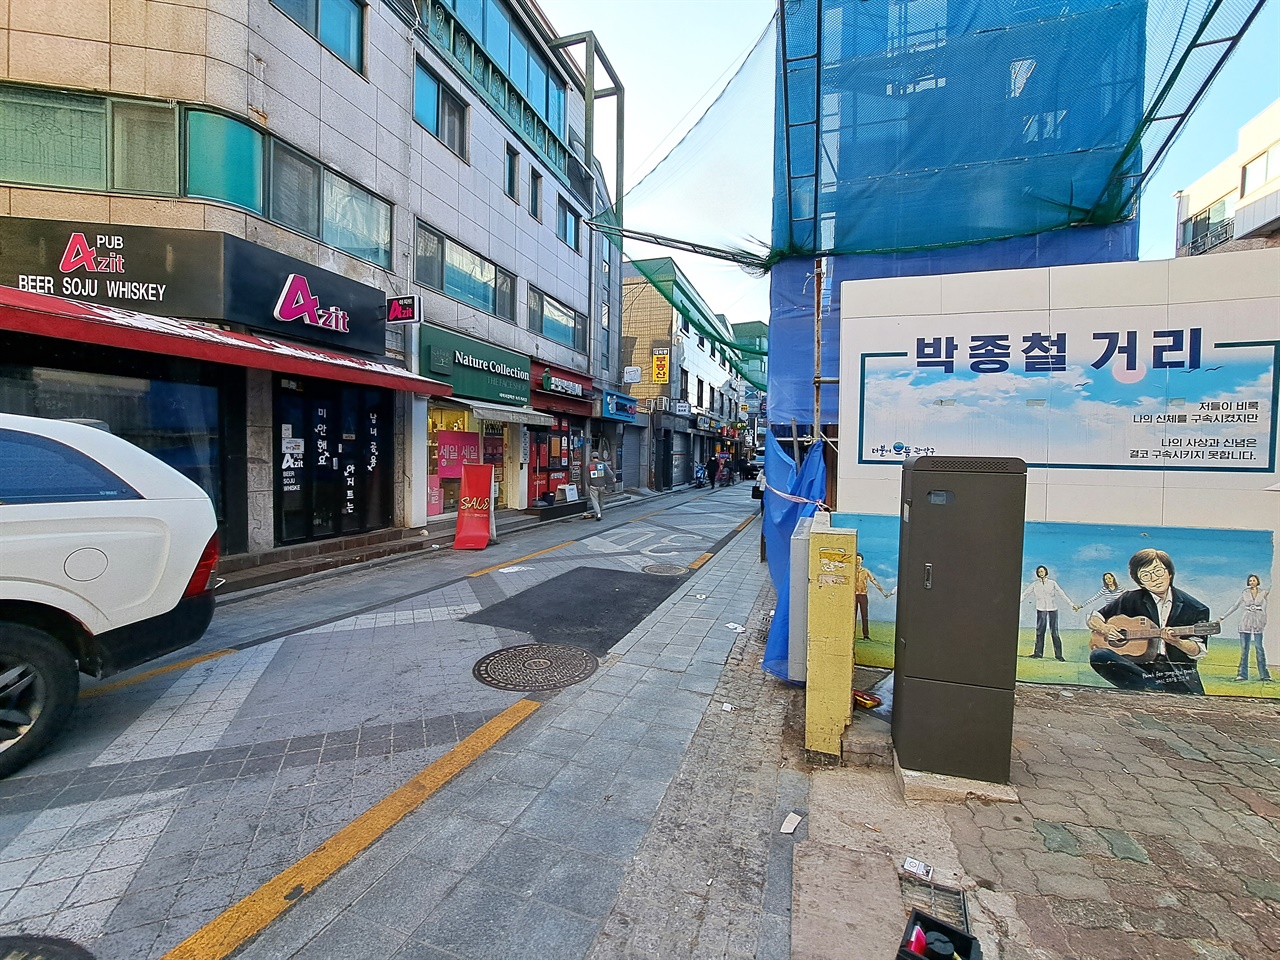 녹두거리 인근에 명명한 '박종철 거리'의 풍경. 공사 중인 건물은 박종철 기념관으로 추정된다.